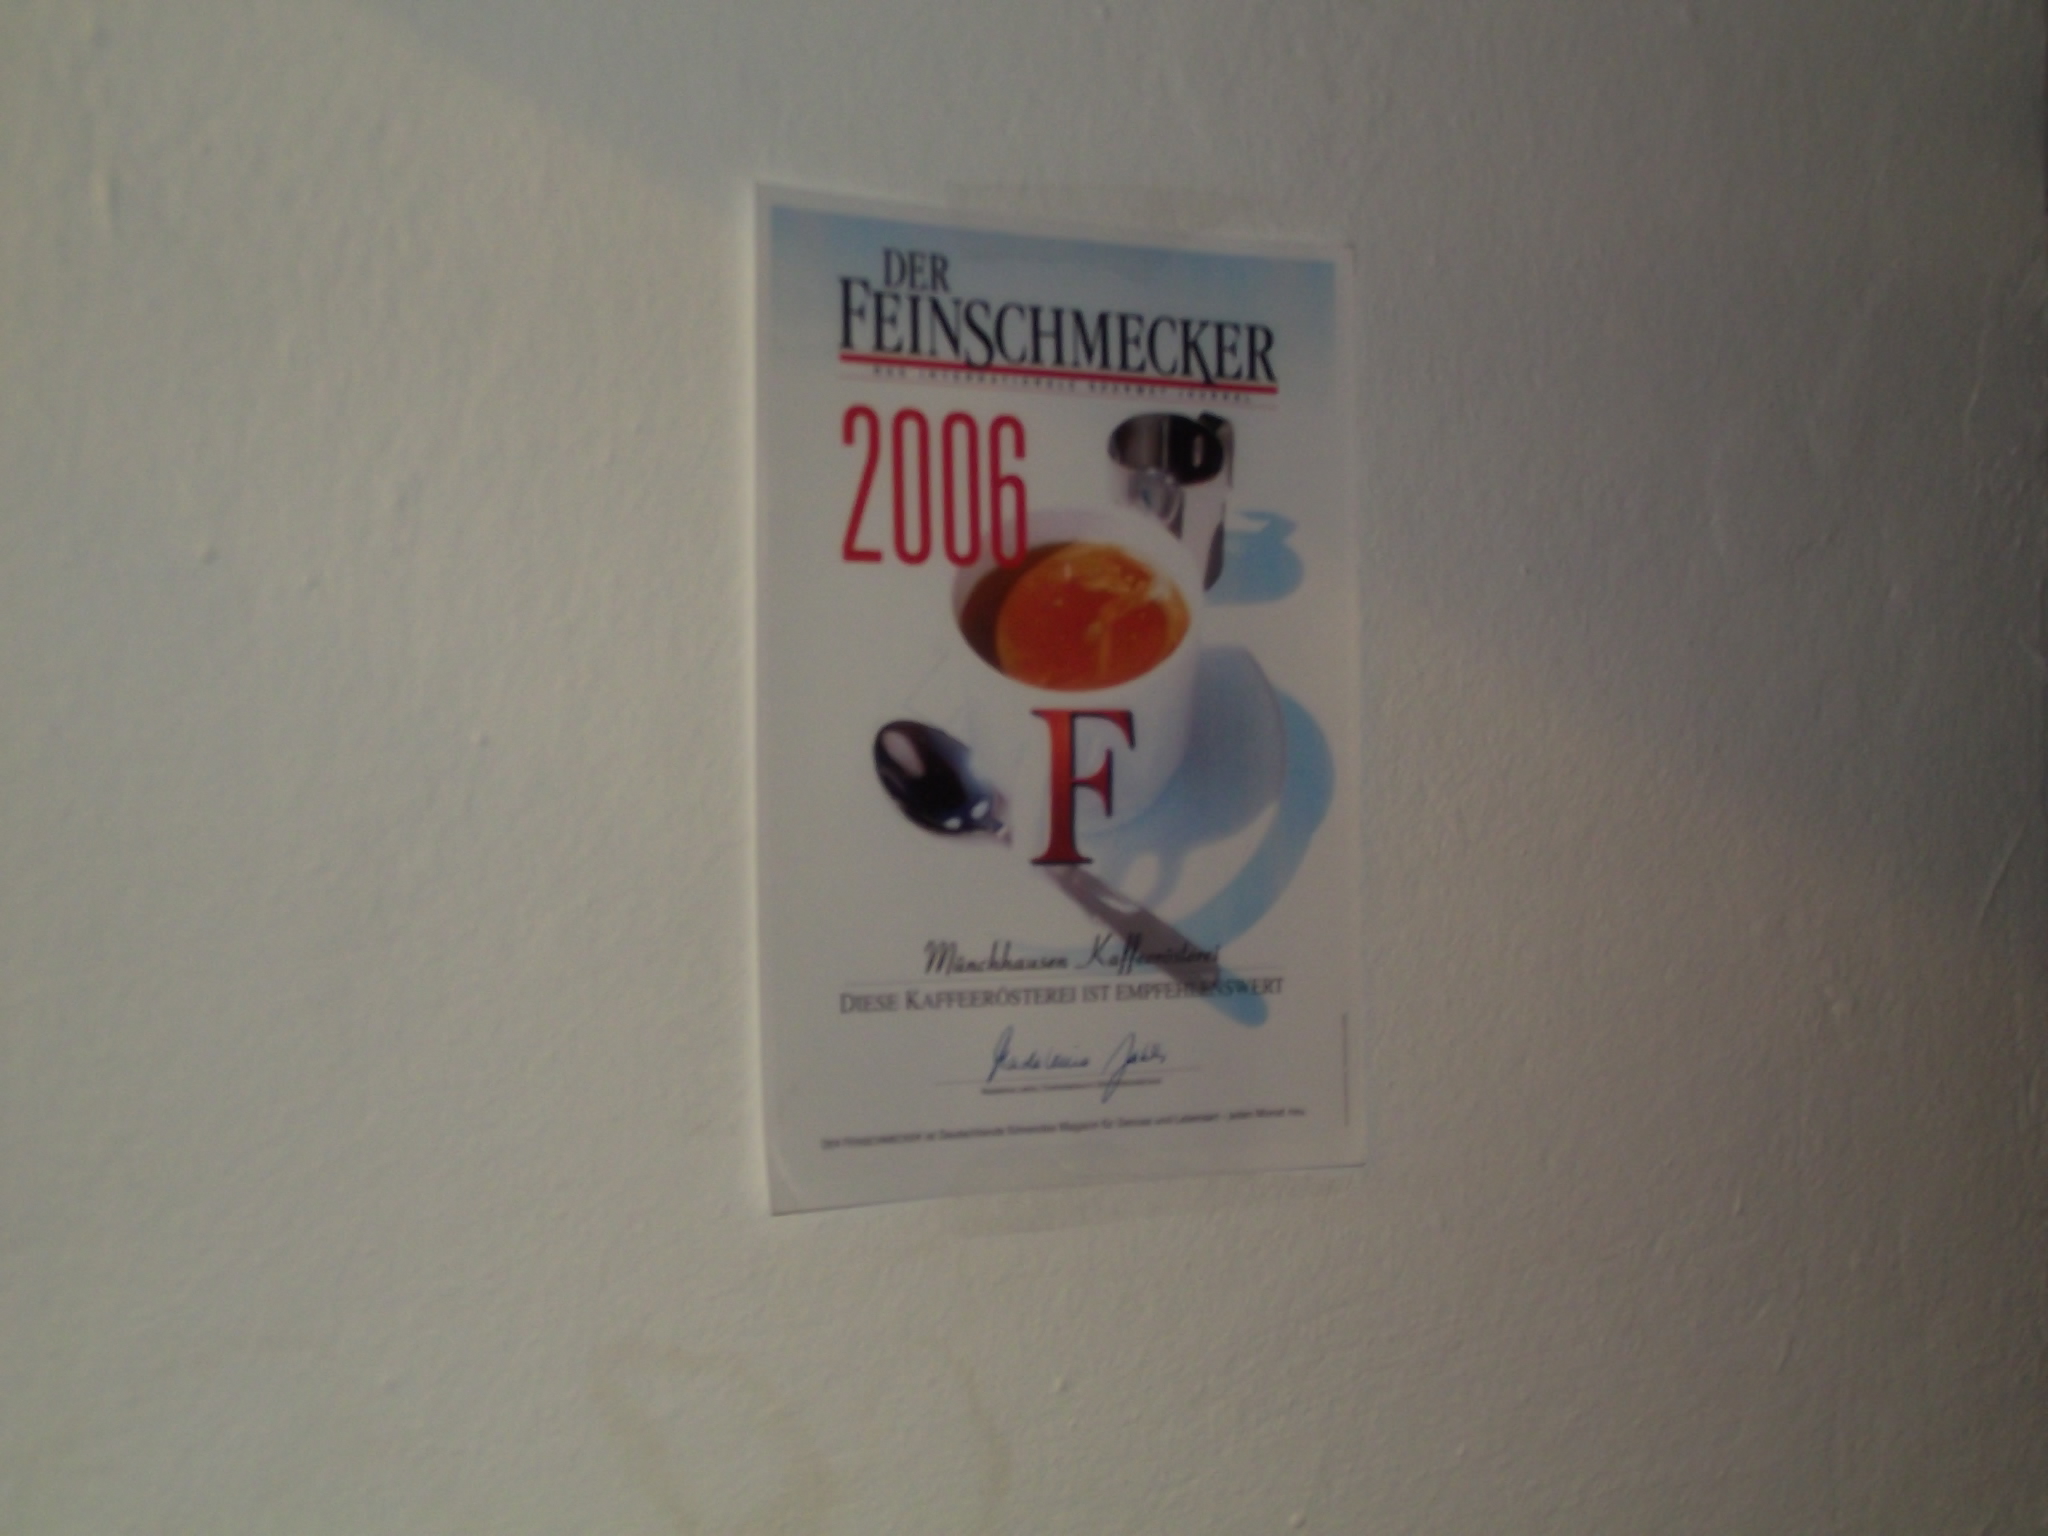 Kaffeerösterei Münchhausen in Bremen - ausgezeichnet vom Feinschmecker 2006